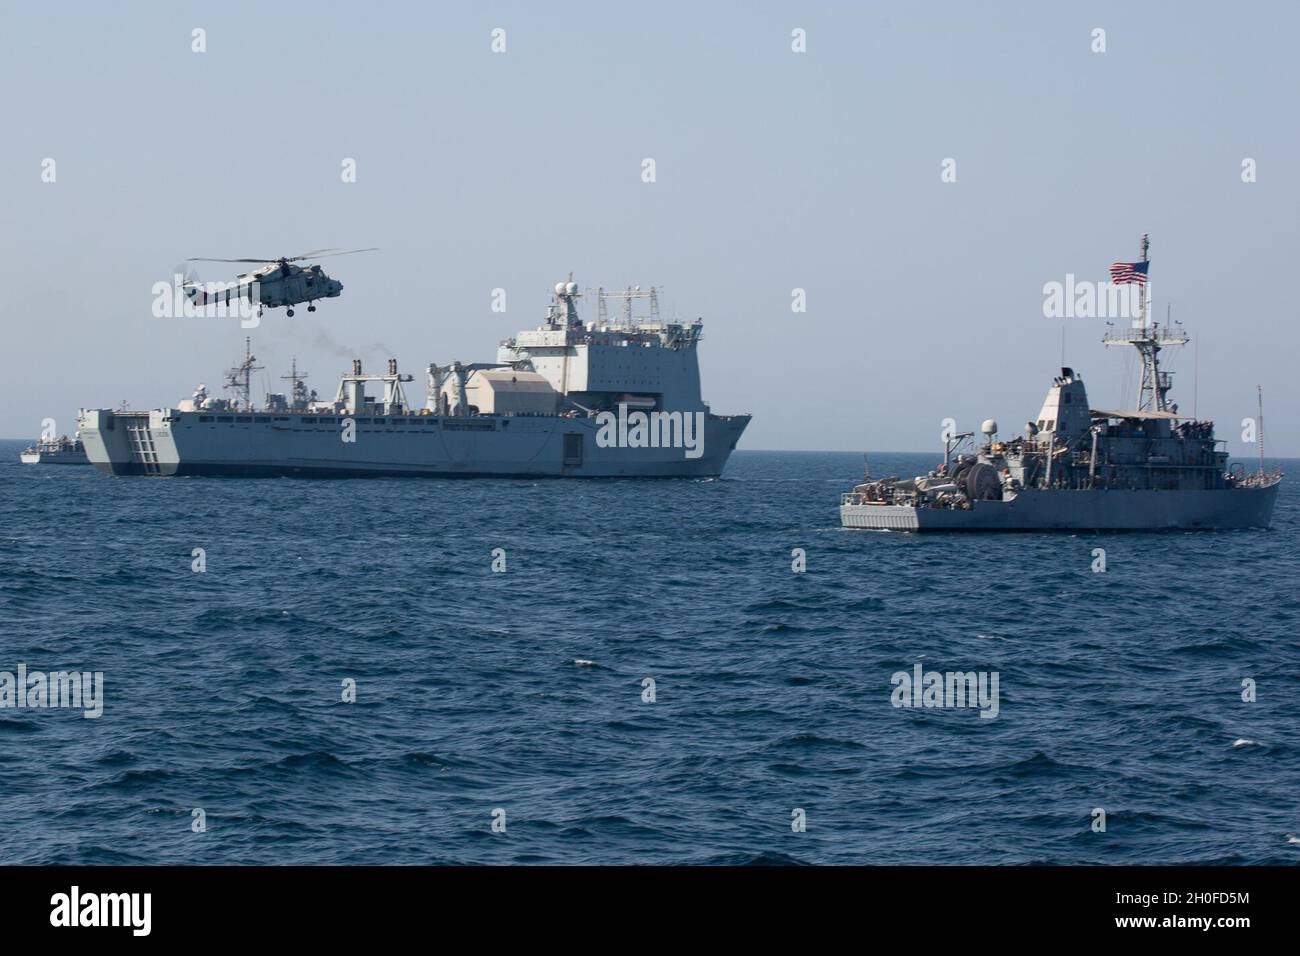 210224-A-BD272-0980 SEA OF OMAN (FEB 24, 2021) - Ein Hubschrauber der Royal Navy of Oman Lynx operiert in Formation mit Landeanlegestelle RFA Cardigan Bay (L 3009), links und Minengegenmaßnahmen Schiff USS Sentry (MCM 3) während der Koalitionsübung Khunjar Hadd 26 im Oman-Meer, 24. Februar. Khunjar Hadd 26 ist eine jährliche Übung zur Verbesserung der gegenseitigen maritimen Fähigkeiten und der Interoperabilität zwischen den US-, omanischen, französischen und britischen Militärkräften, um Bedrohungen für die Freiheit der Navigation und den freien Fluss des internationalen Handels anzugehen. Stockfoto